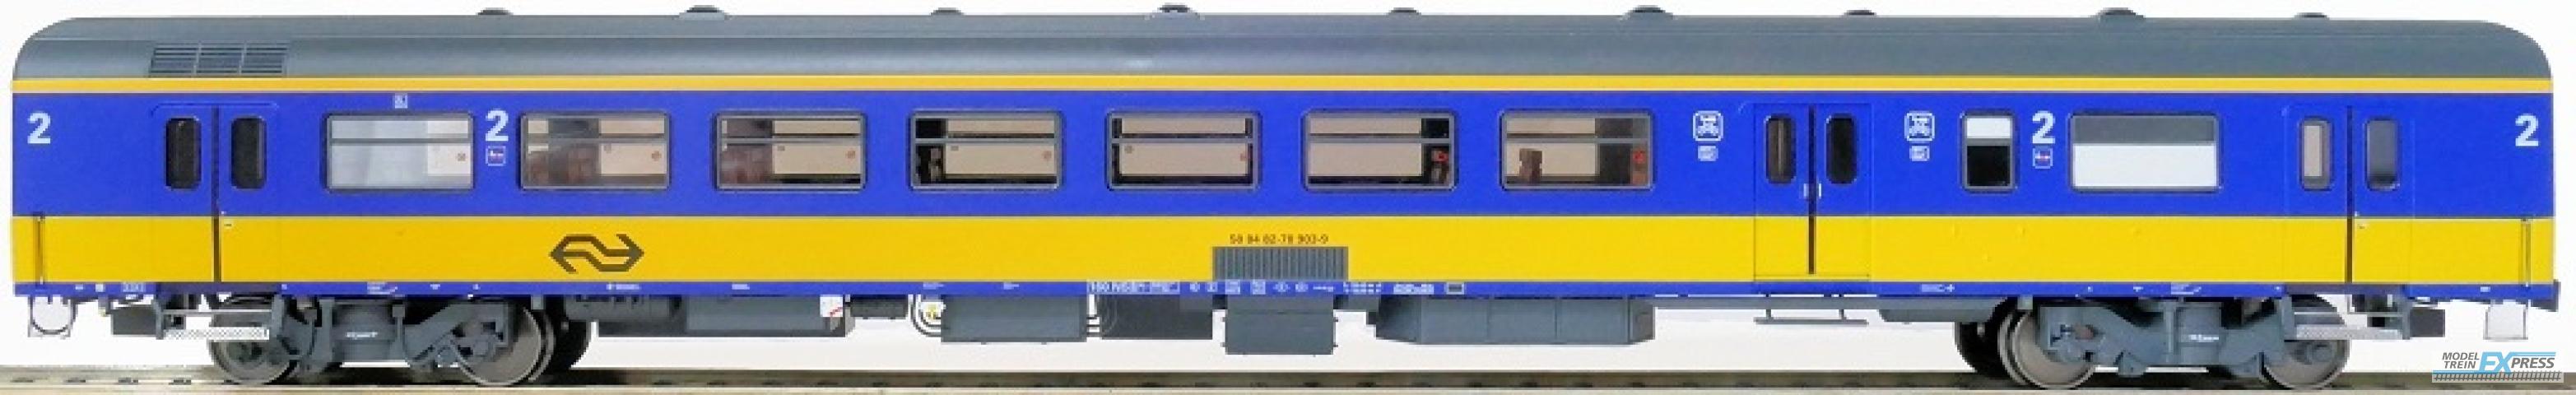 Exact-train 11040 NS ICR (Originalversion) Gepäckwagen BKD (Farbe Gelb / Blau) , Ep. IV